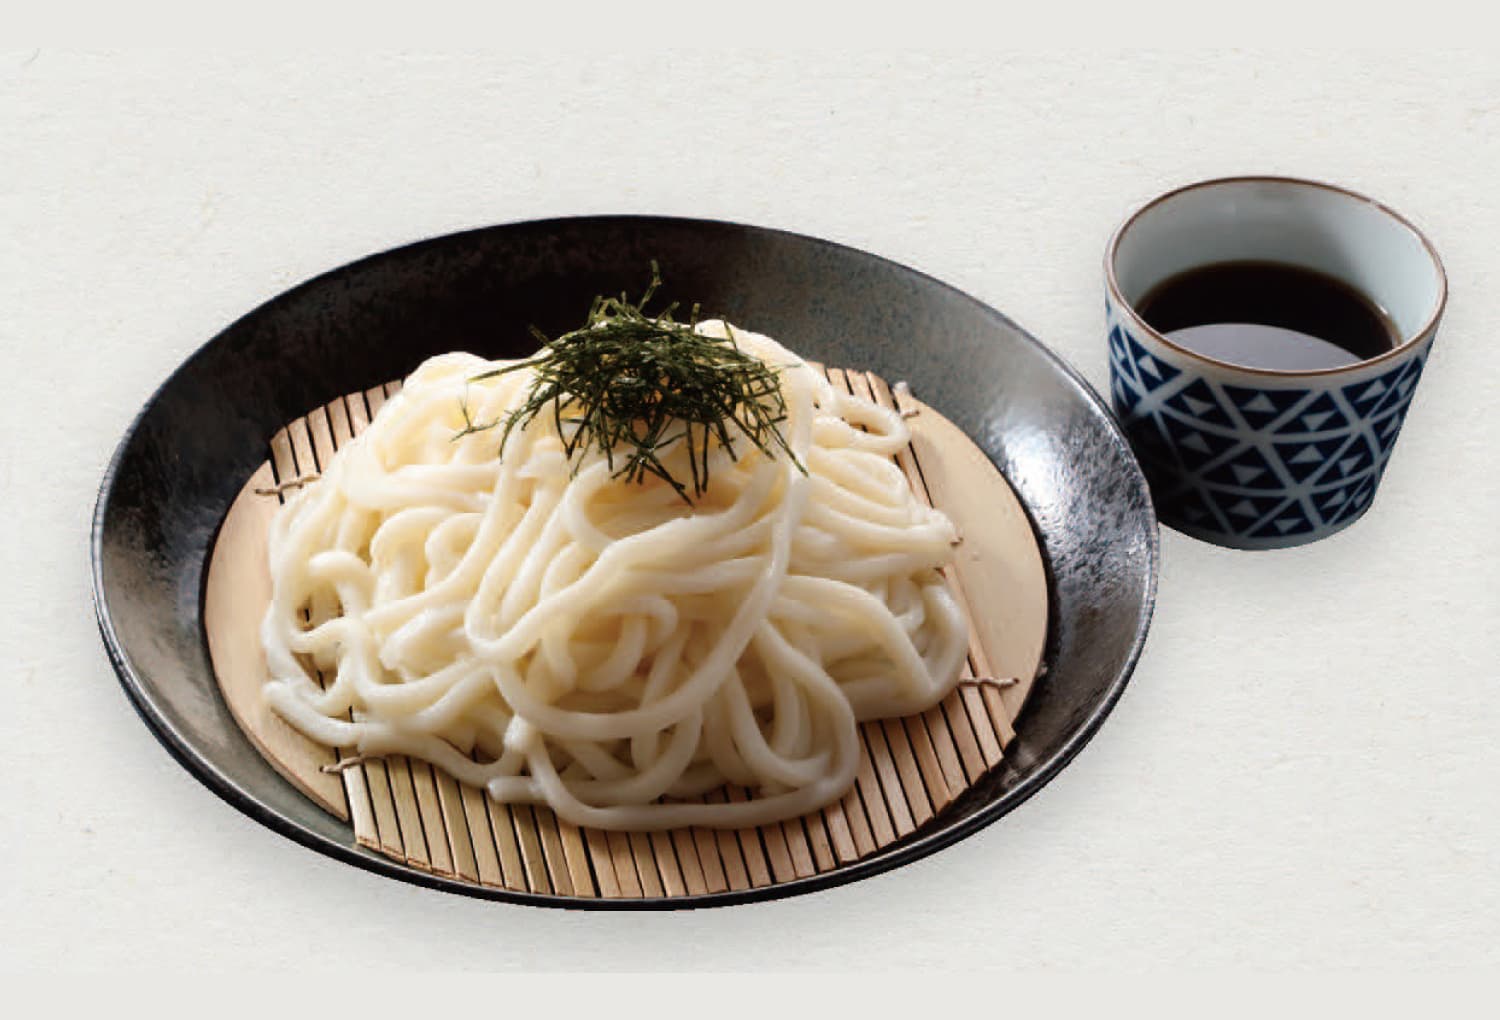 Zaru udon(soba) noodles